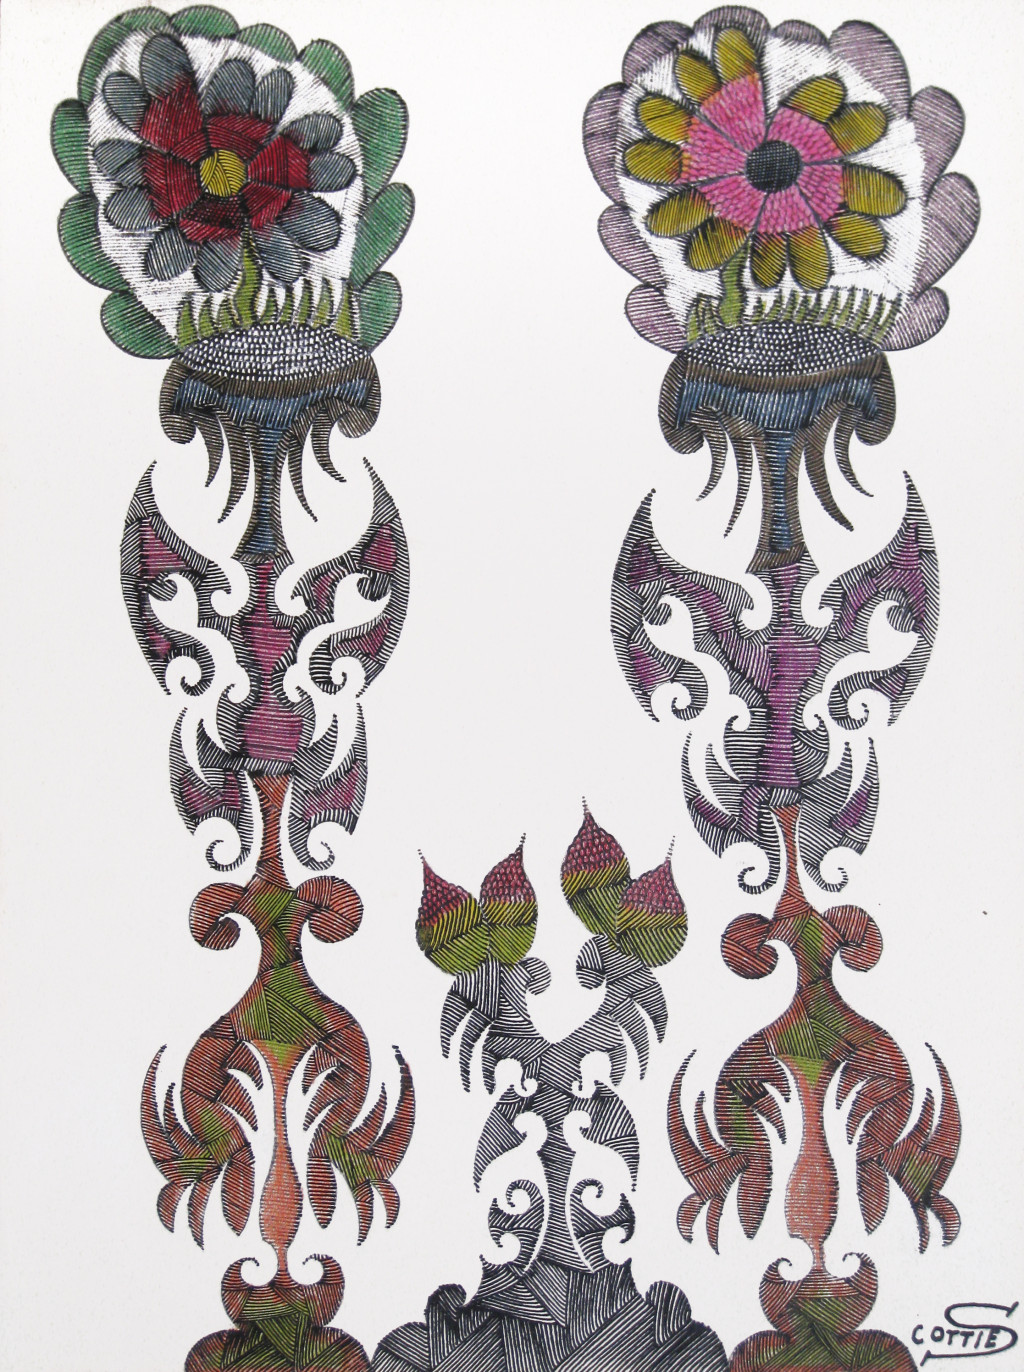 scottie wilson, *s.t. 2 fleurs*, 1944. encre de couleur sur feuille collée sur carton, 38 x 28 cm. - © christian berst art brut, christian berst — art brut